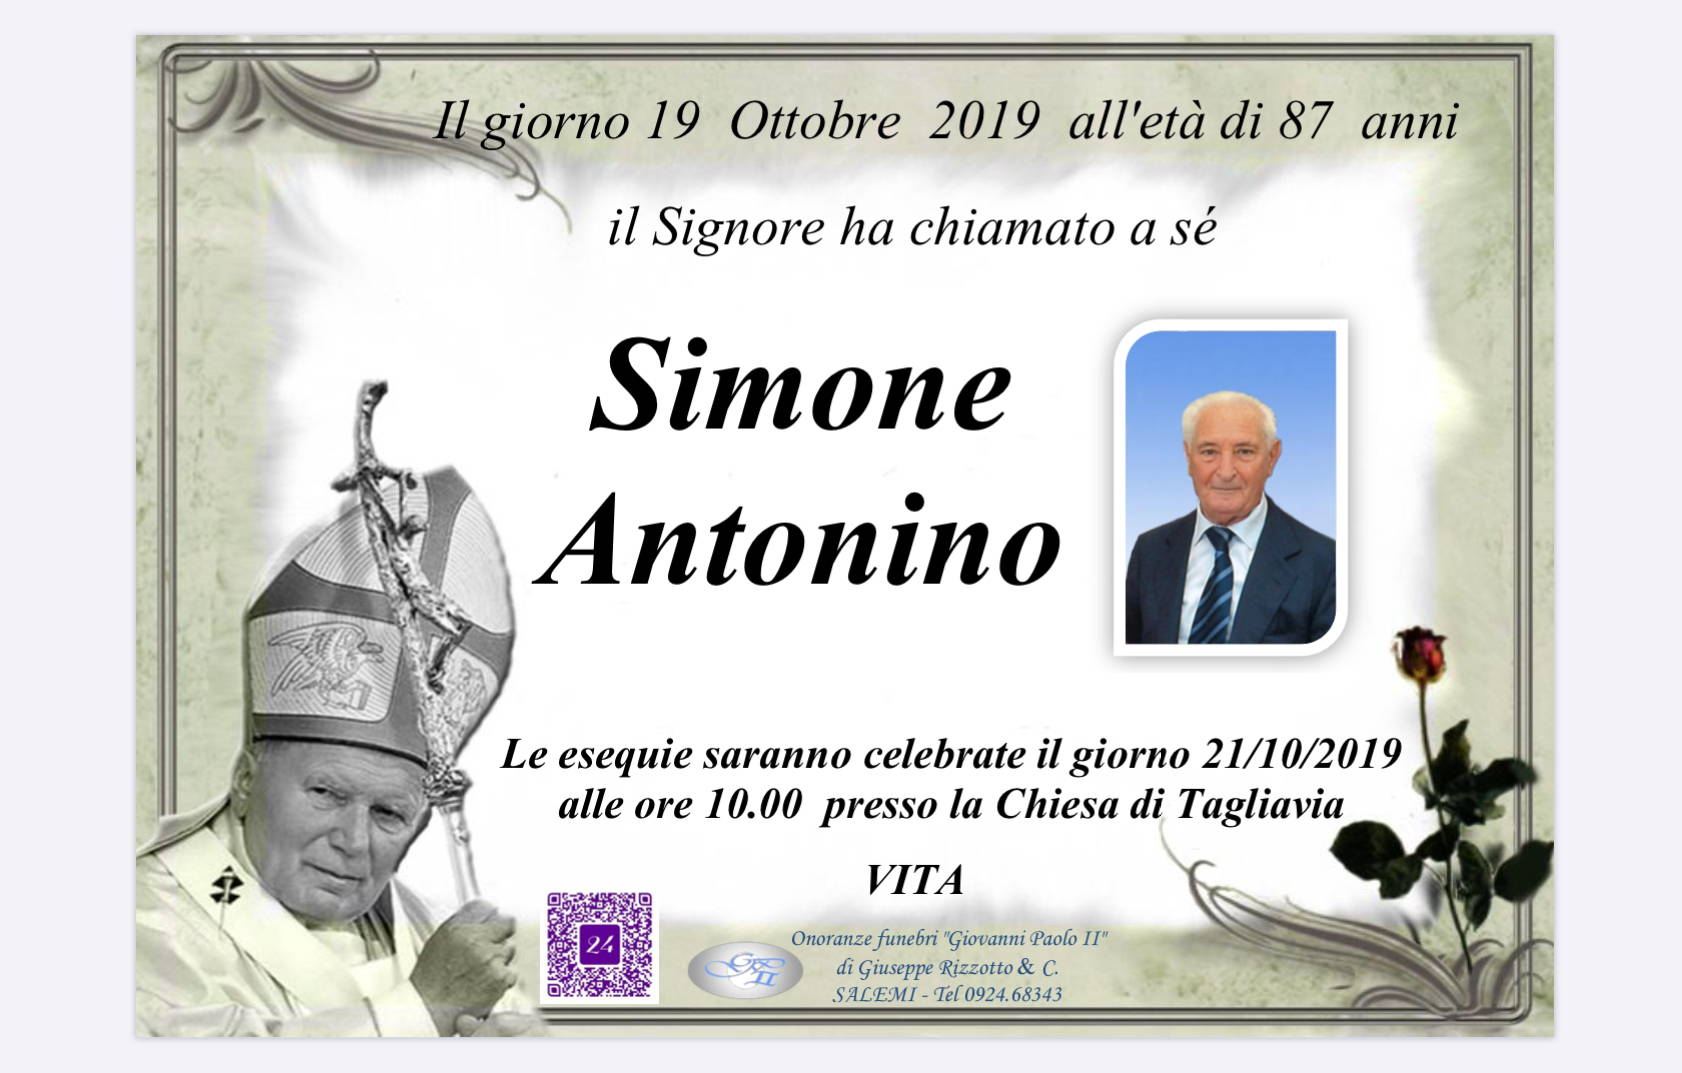 Antonino Simone